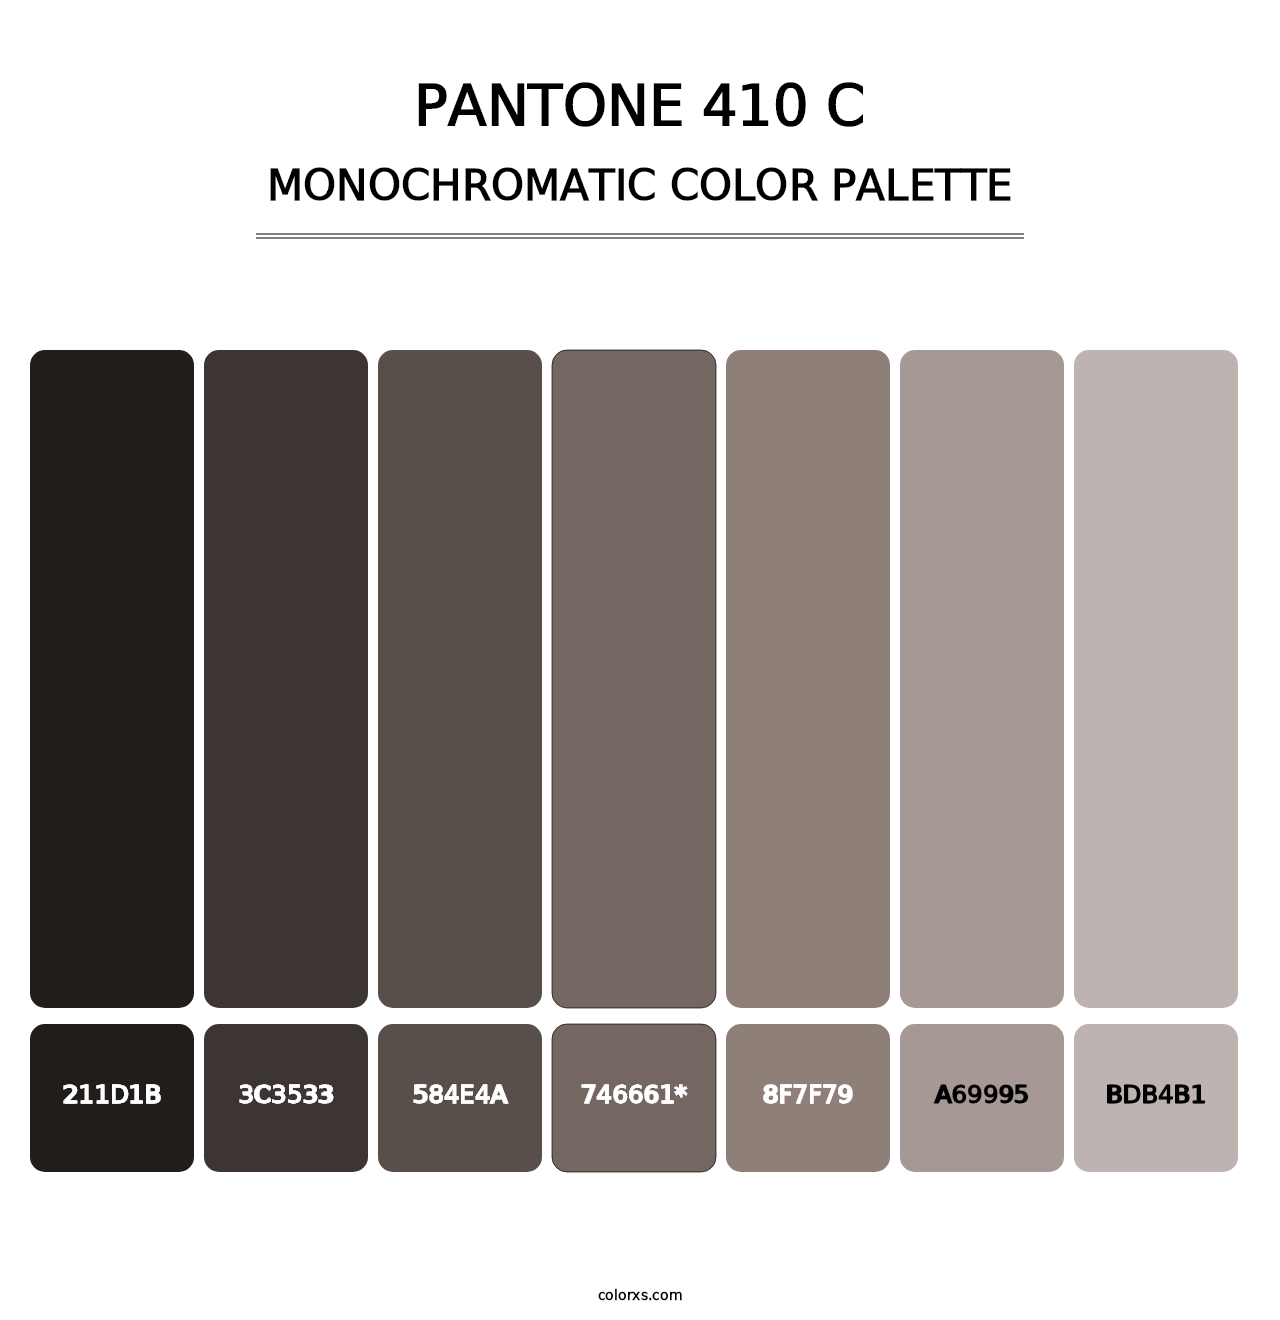 PANTONE 410 C - Monochromatic Color Palette